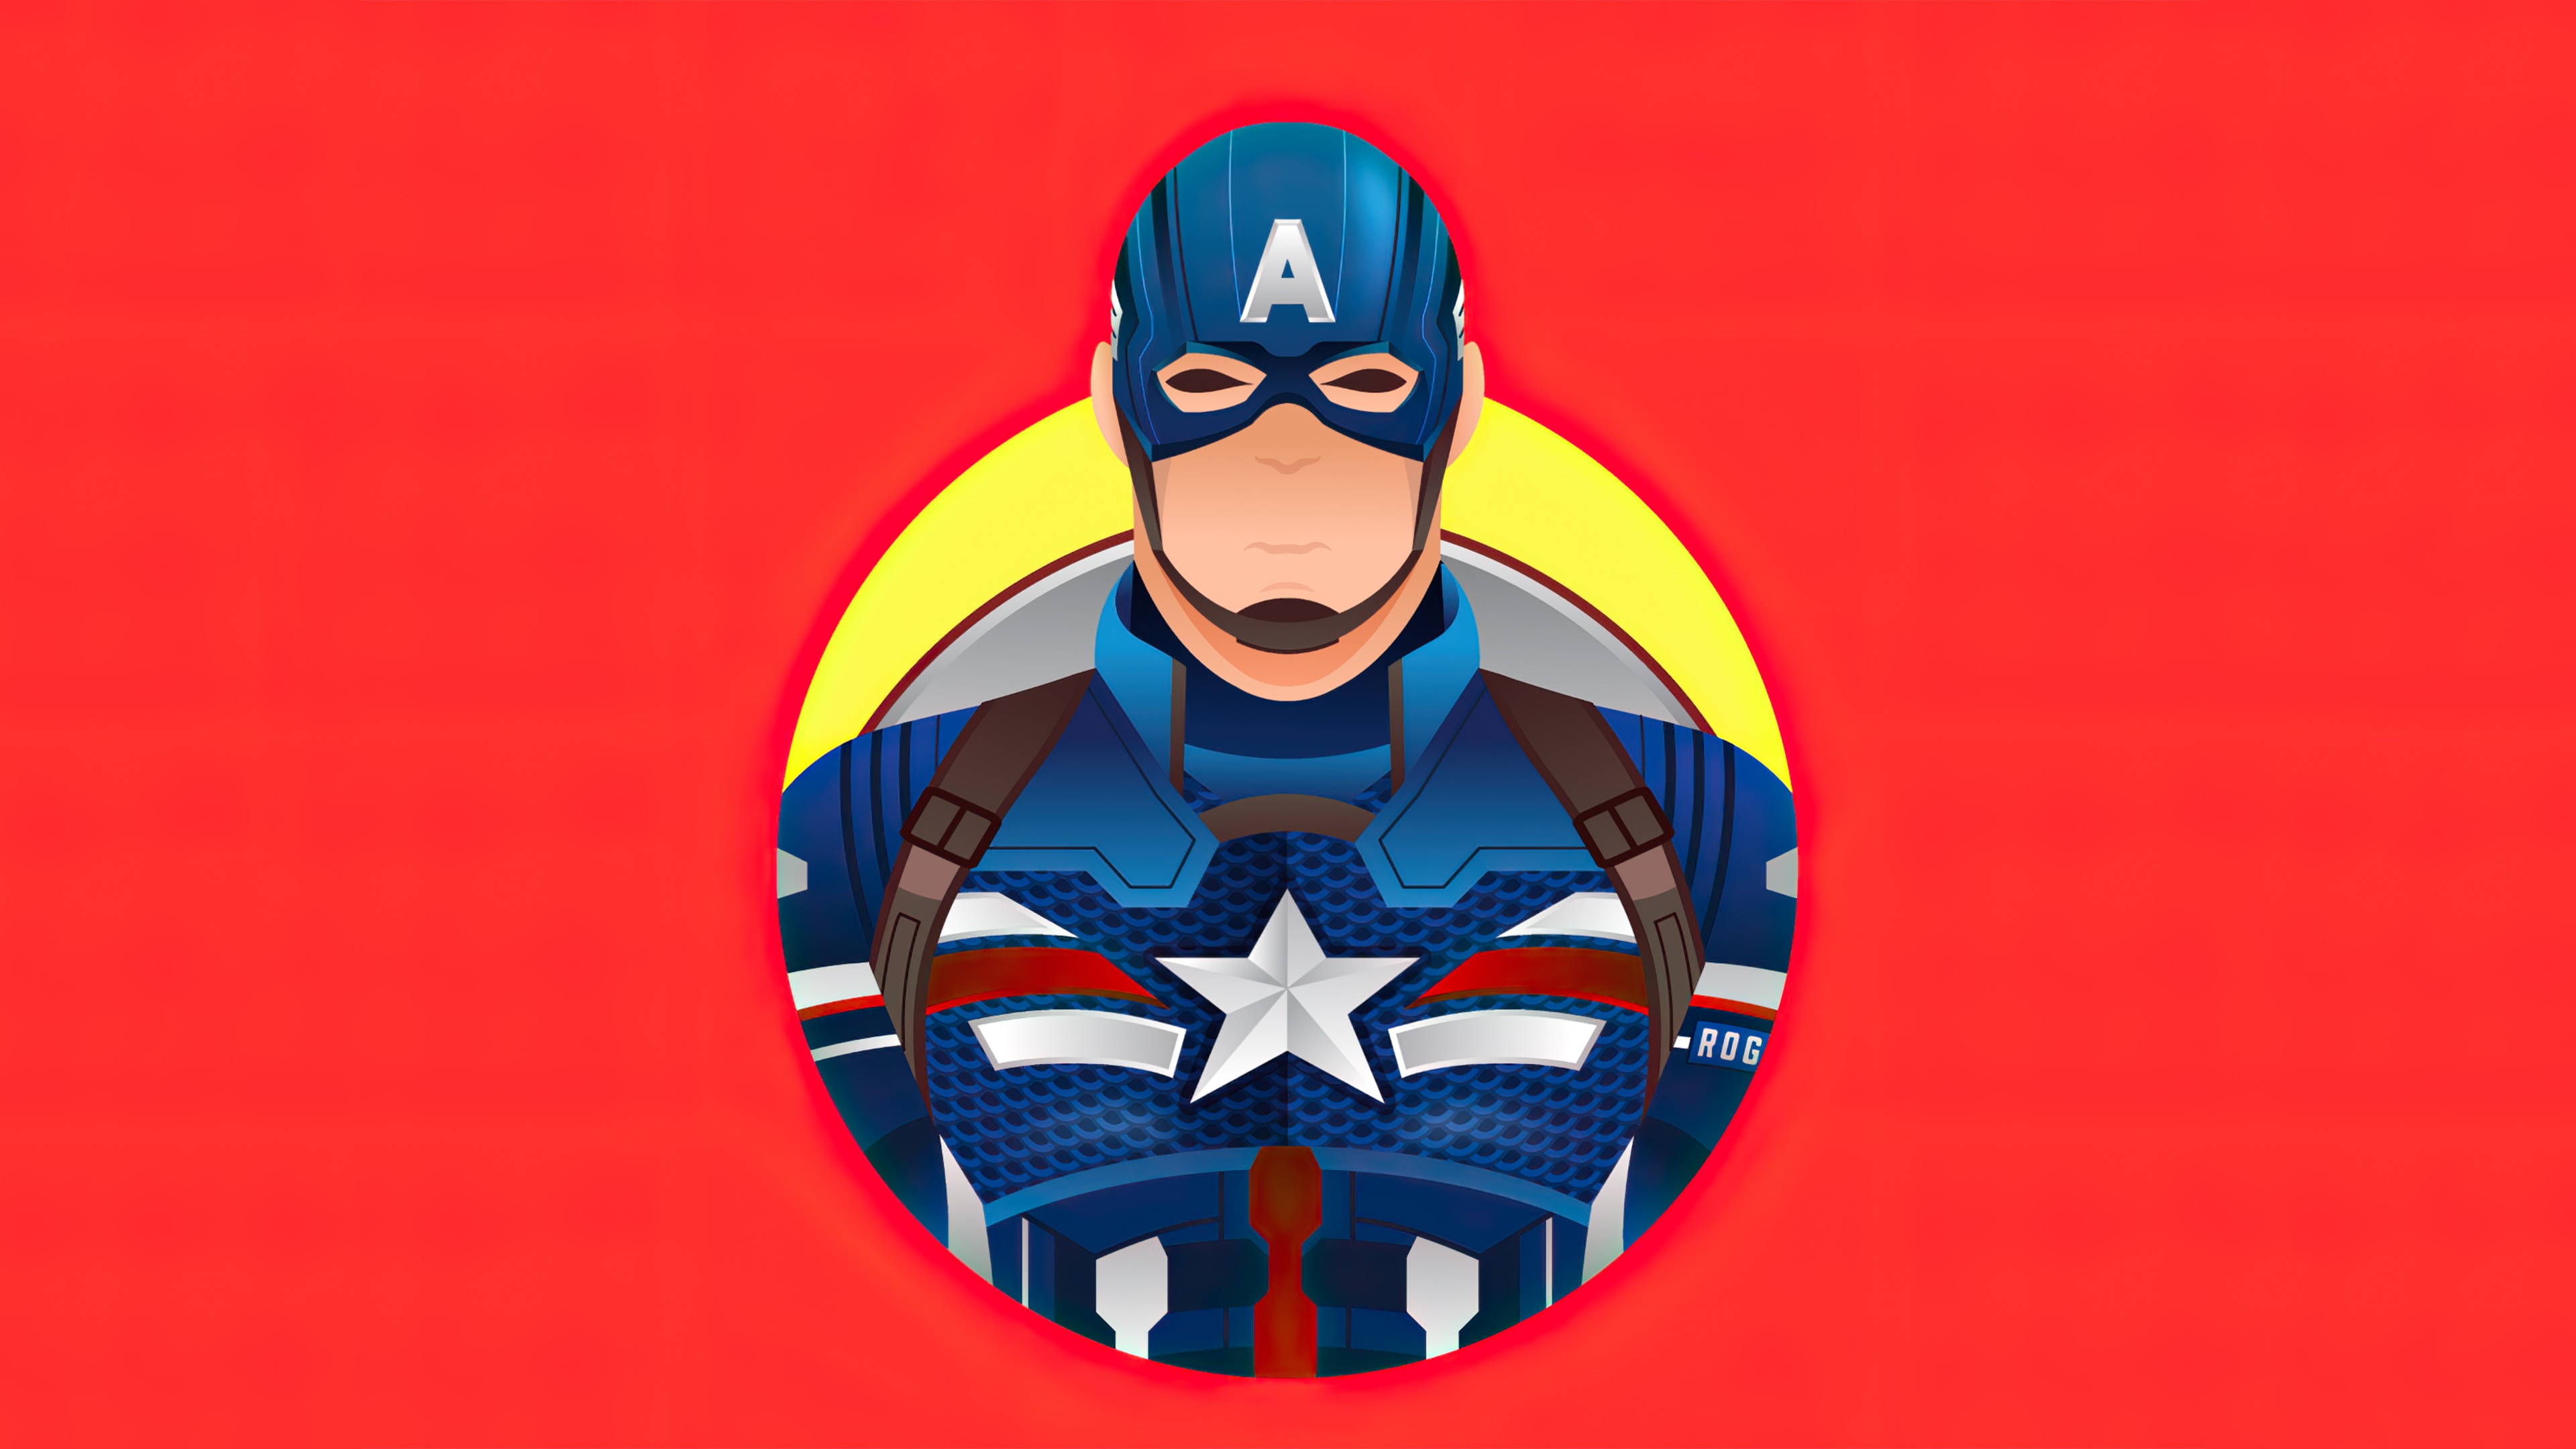 Wallpaper 4k Captain America Minimalism 2020 Wallpaper